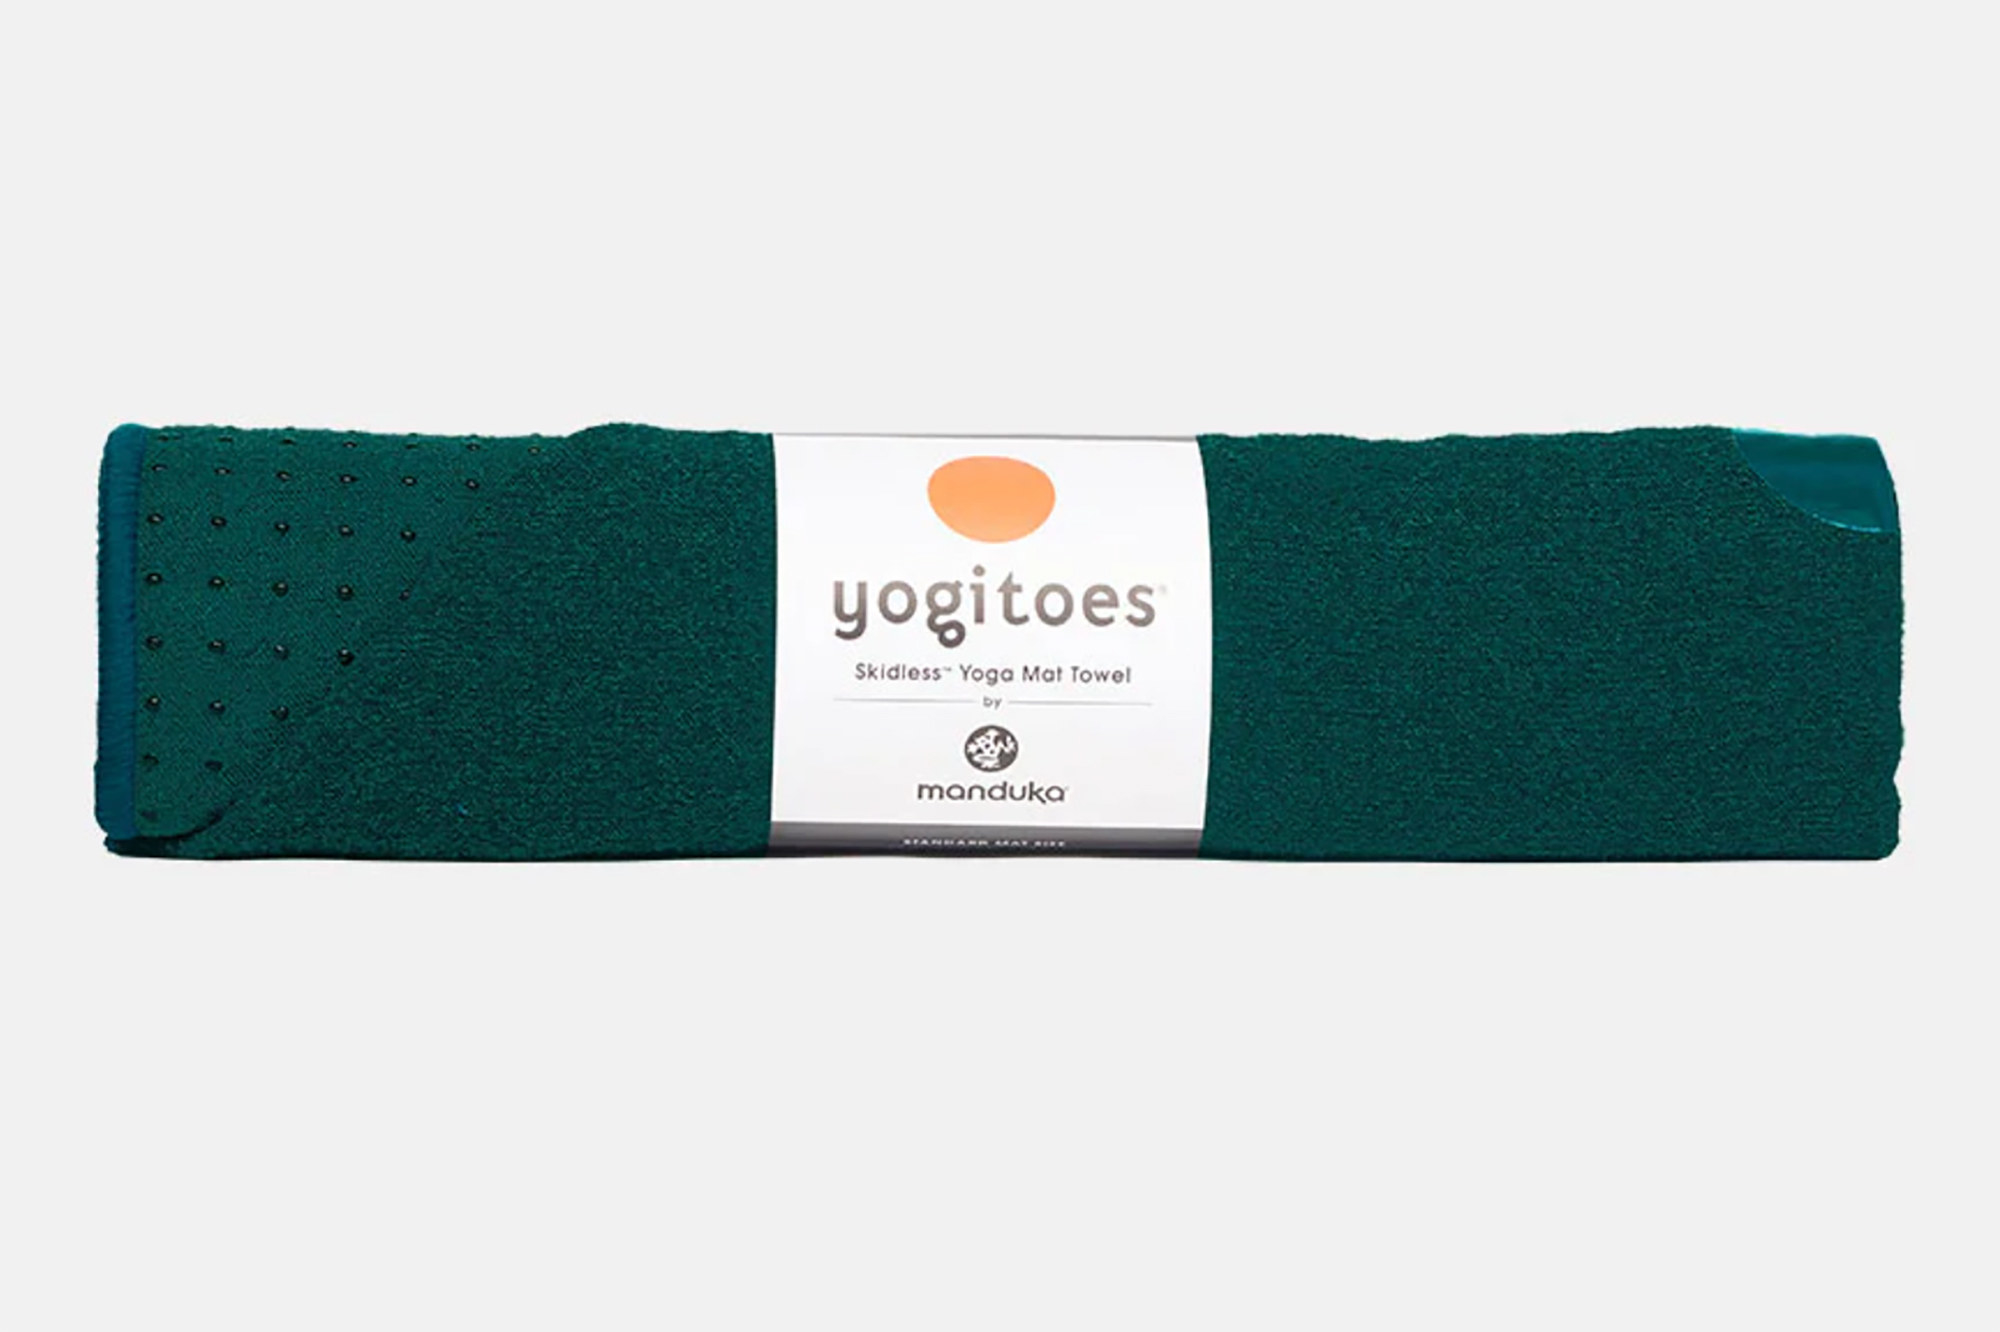 a Manduka Yogitoes yoga mat towel